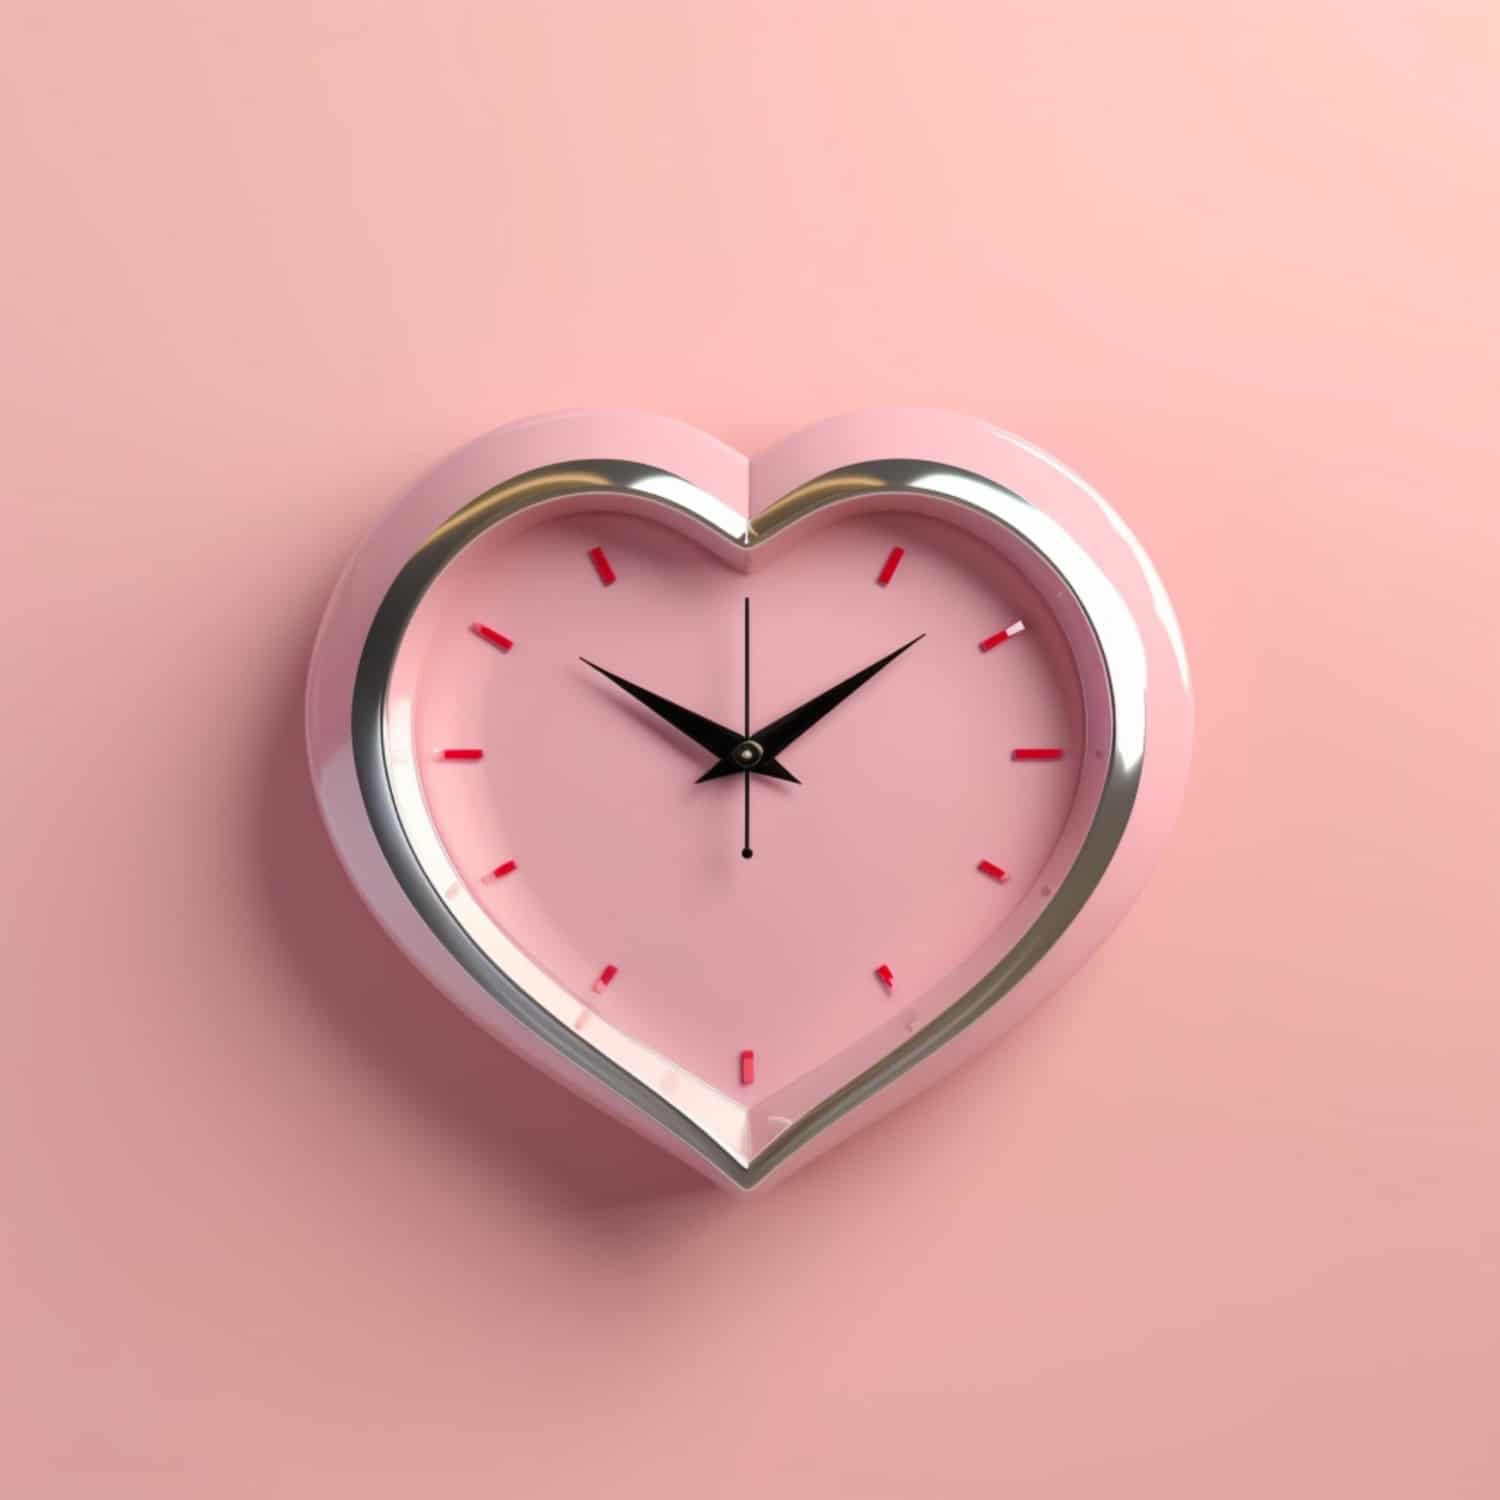 Heart-shaped clock